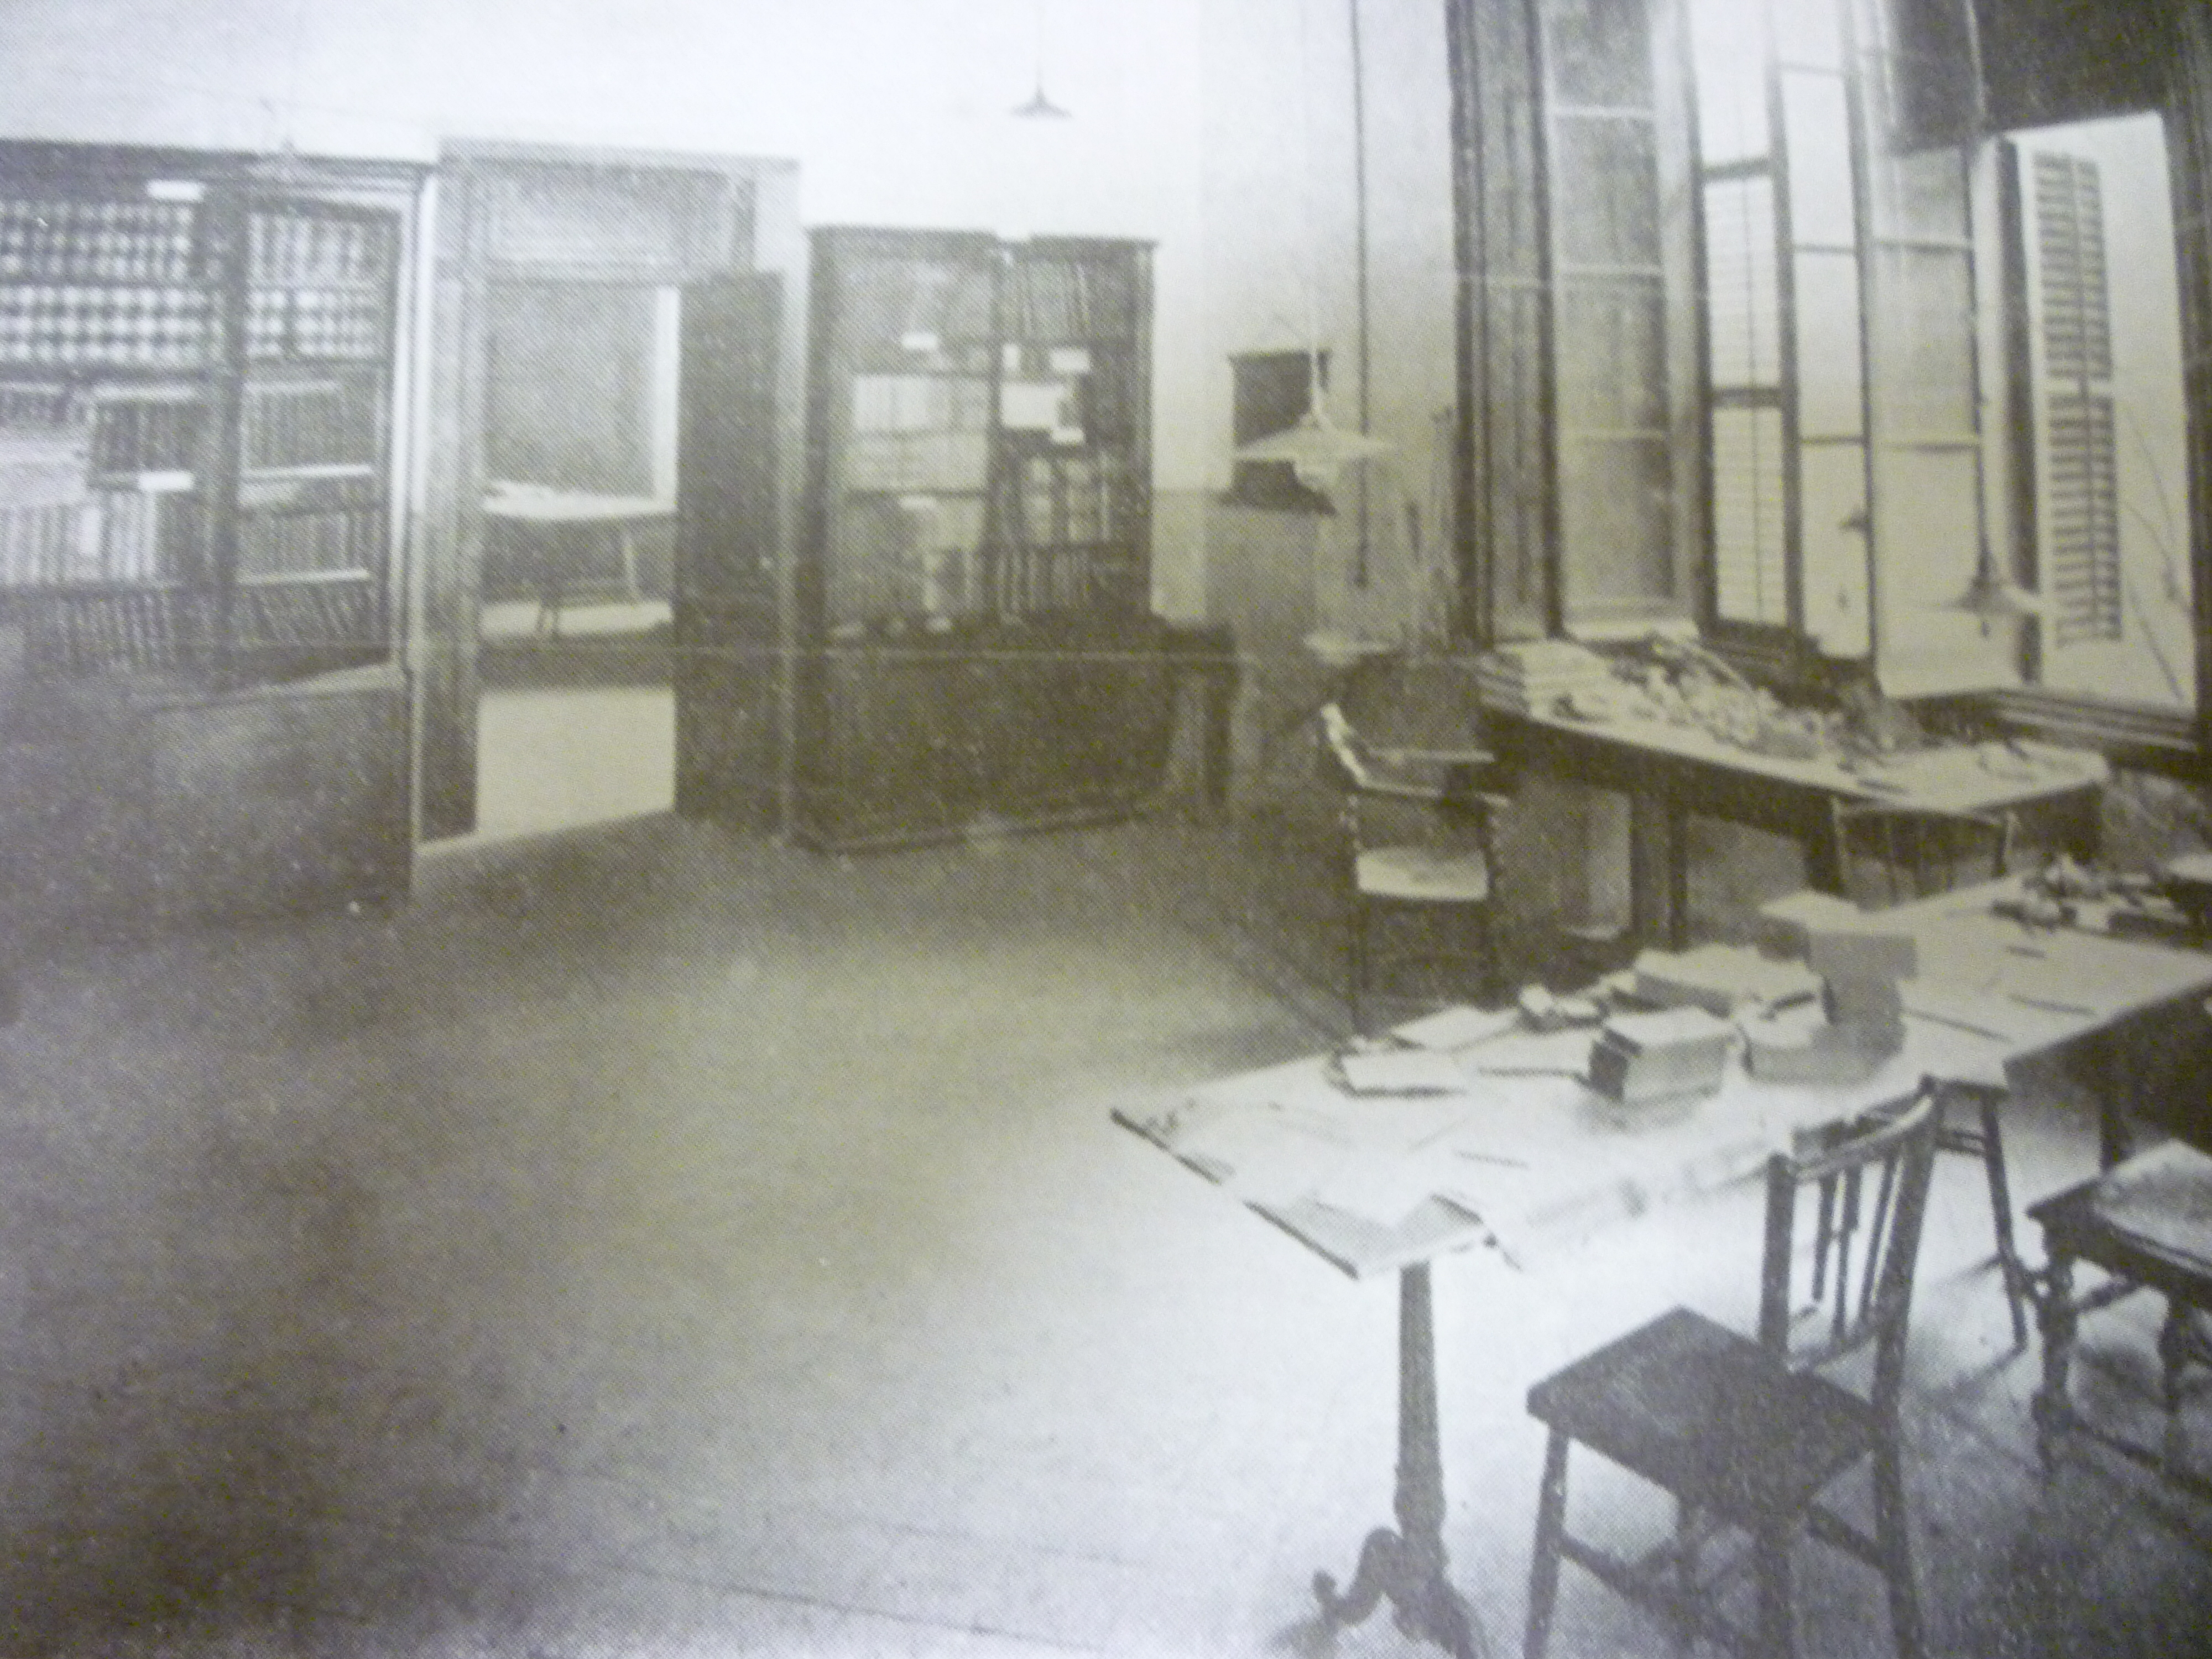  Despacho de Jaume Almera en el Museo Geológico del Seminario en 1912. Fuente: Archivo del Museo Geológico del Seminario Conciliar de Barcelona.